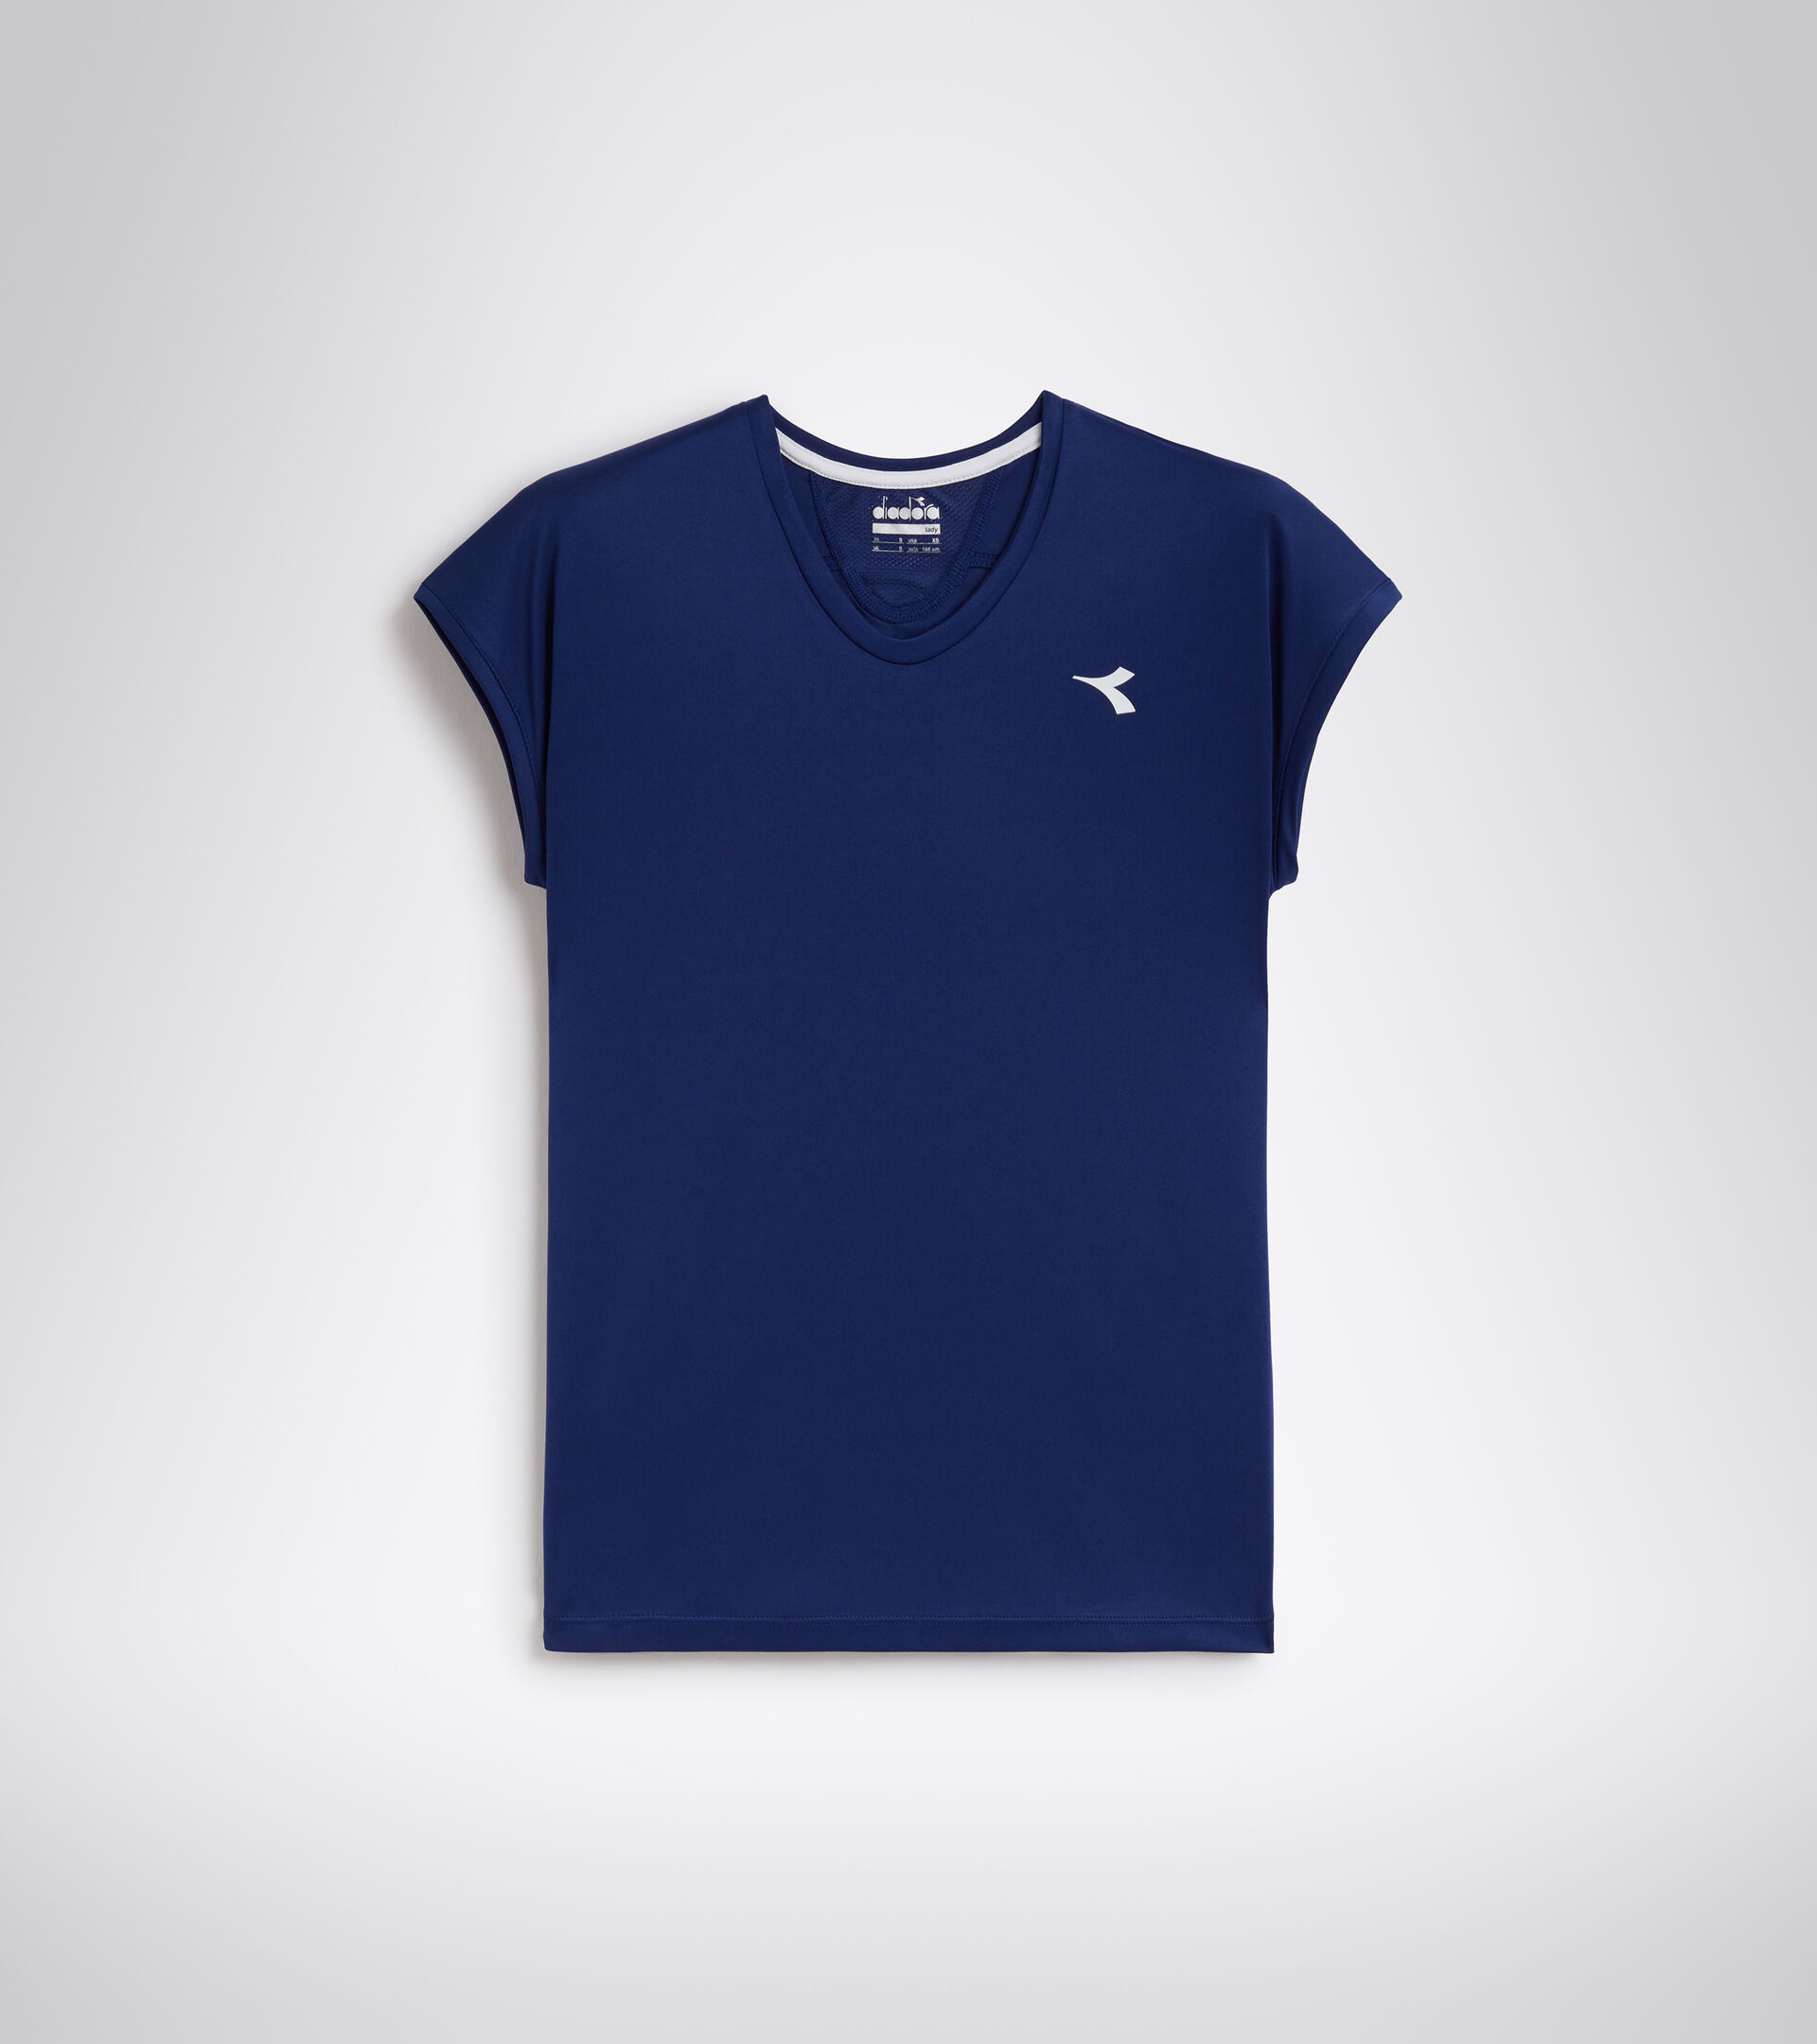 Tennis T-shirt - Women L. T-SHIRT TEAM SALTIRE NAVY - Diadora